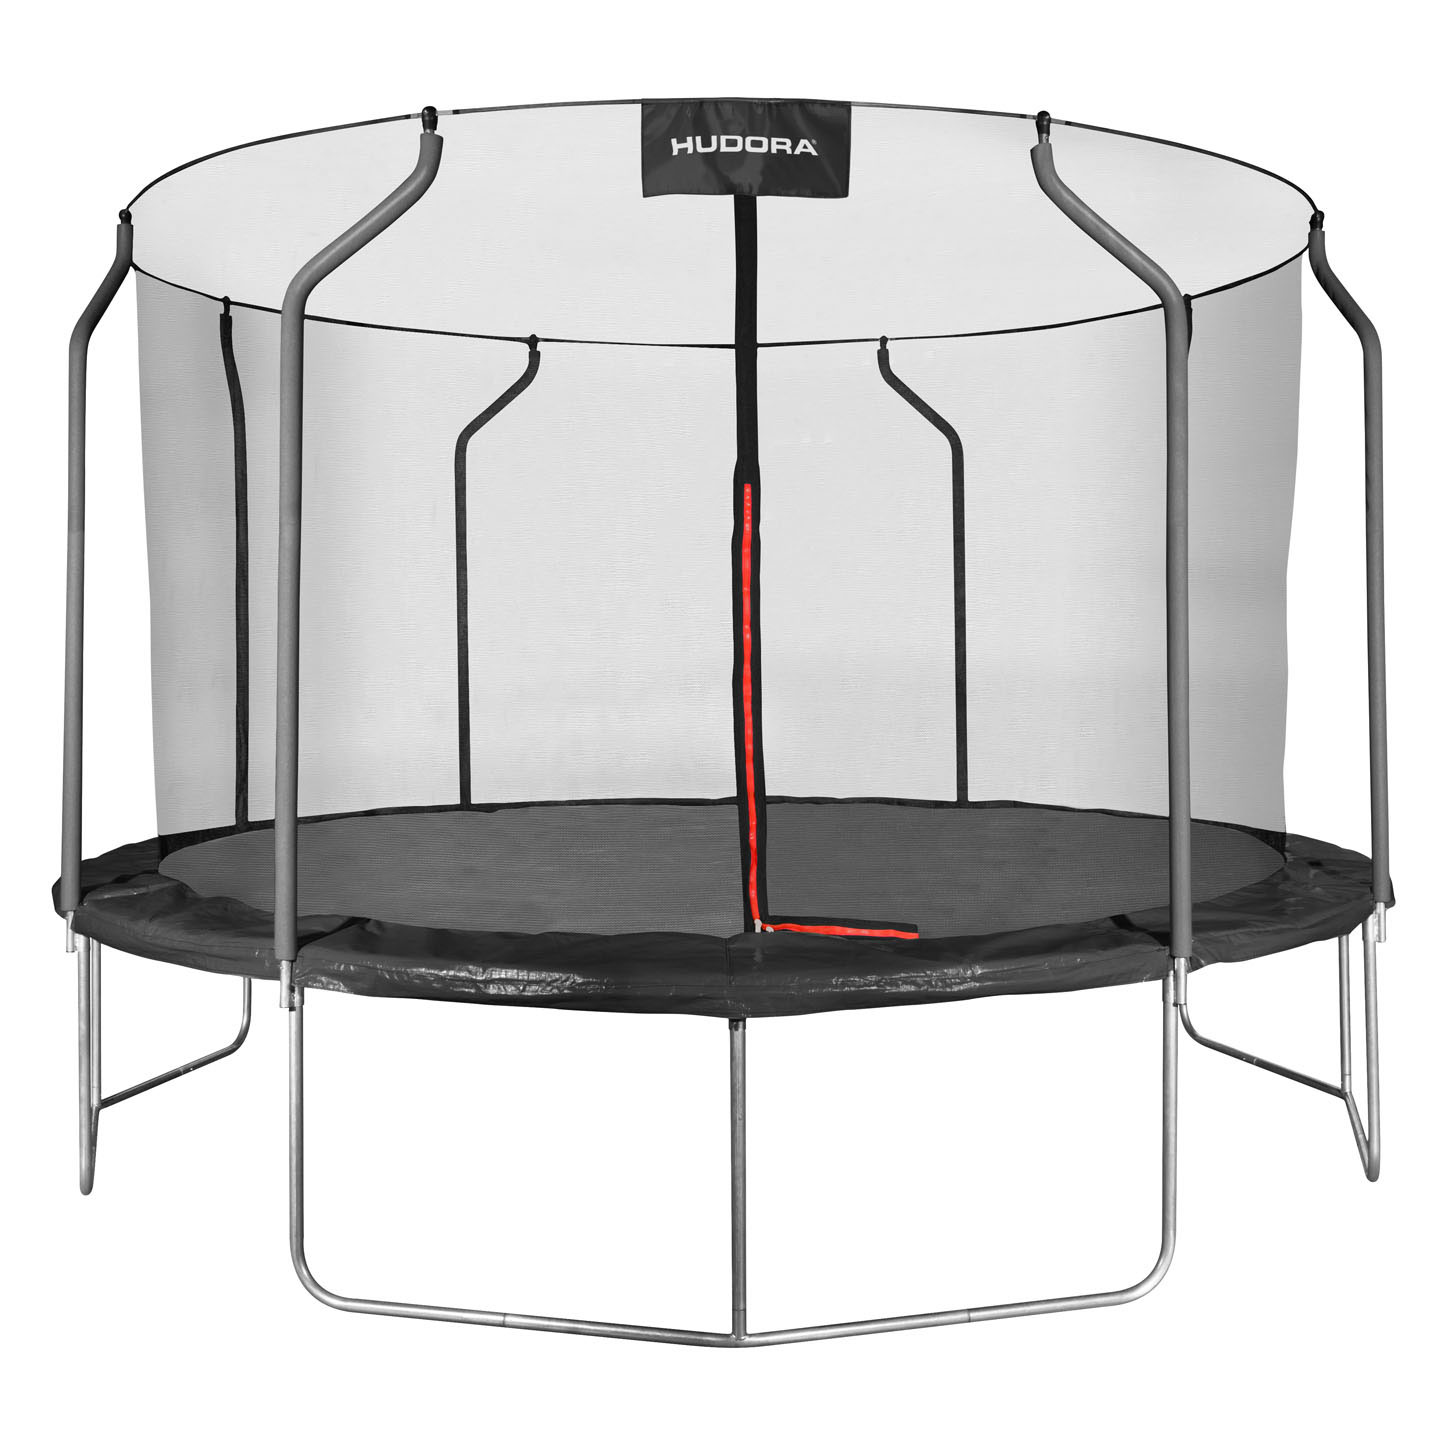 Premier trampoline HUDORA 400V